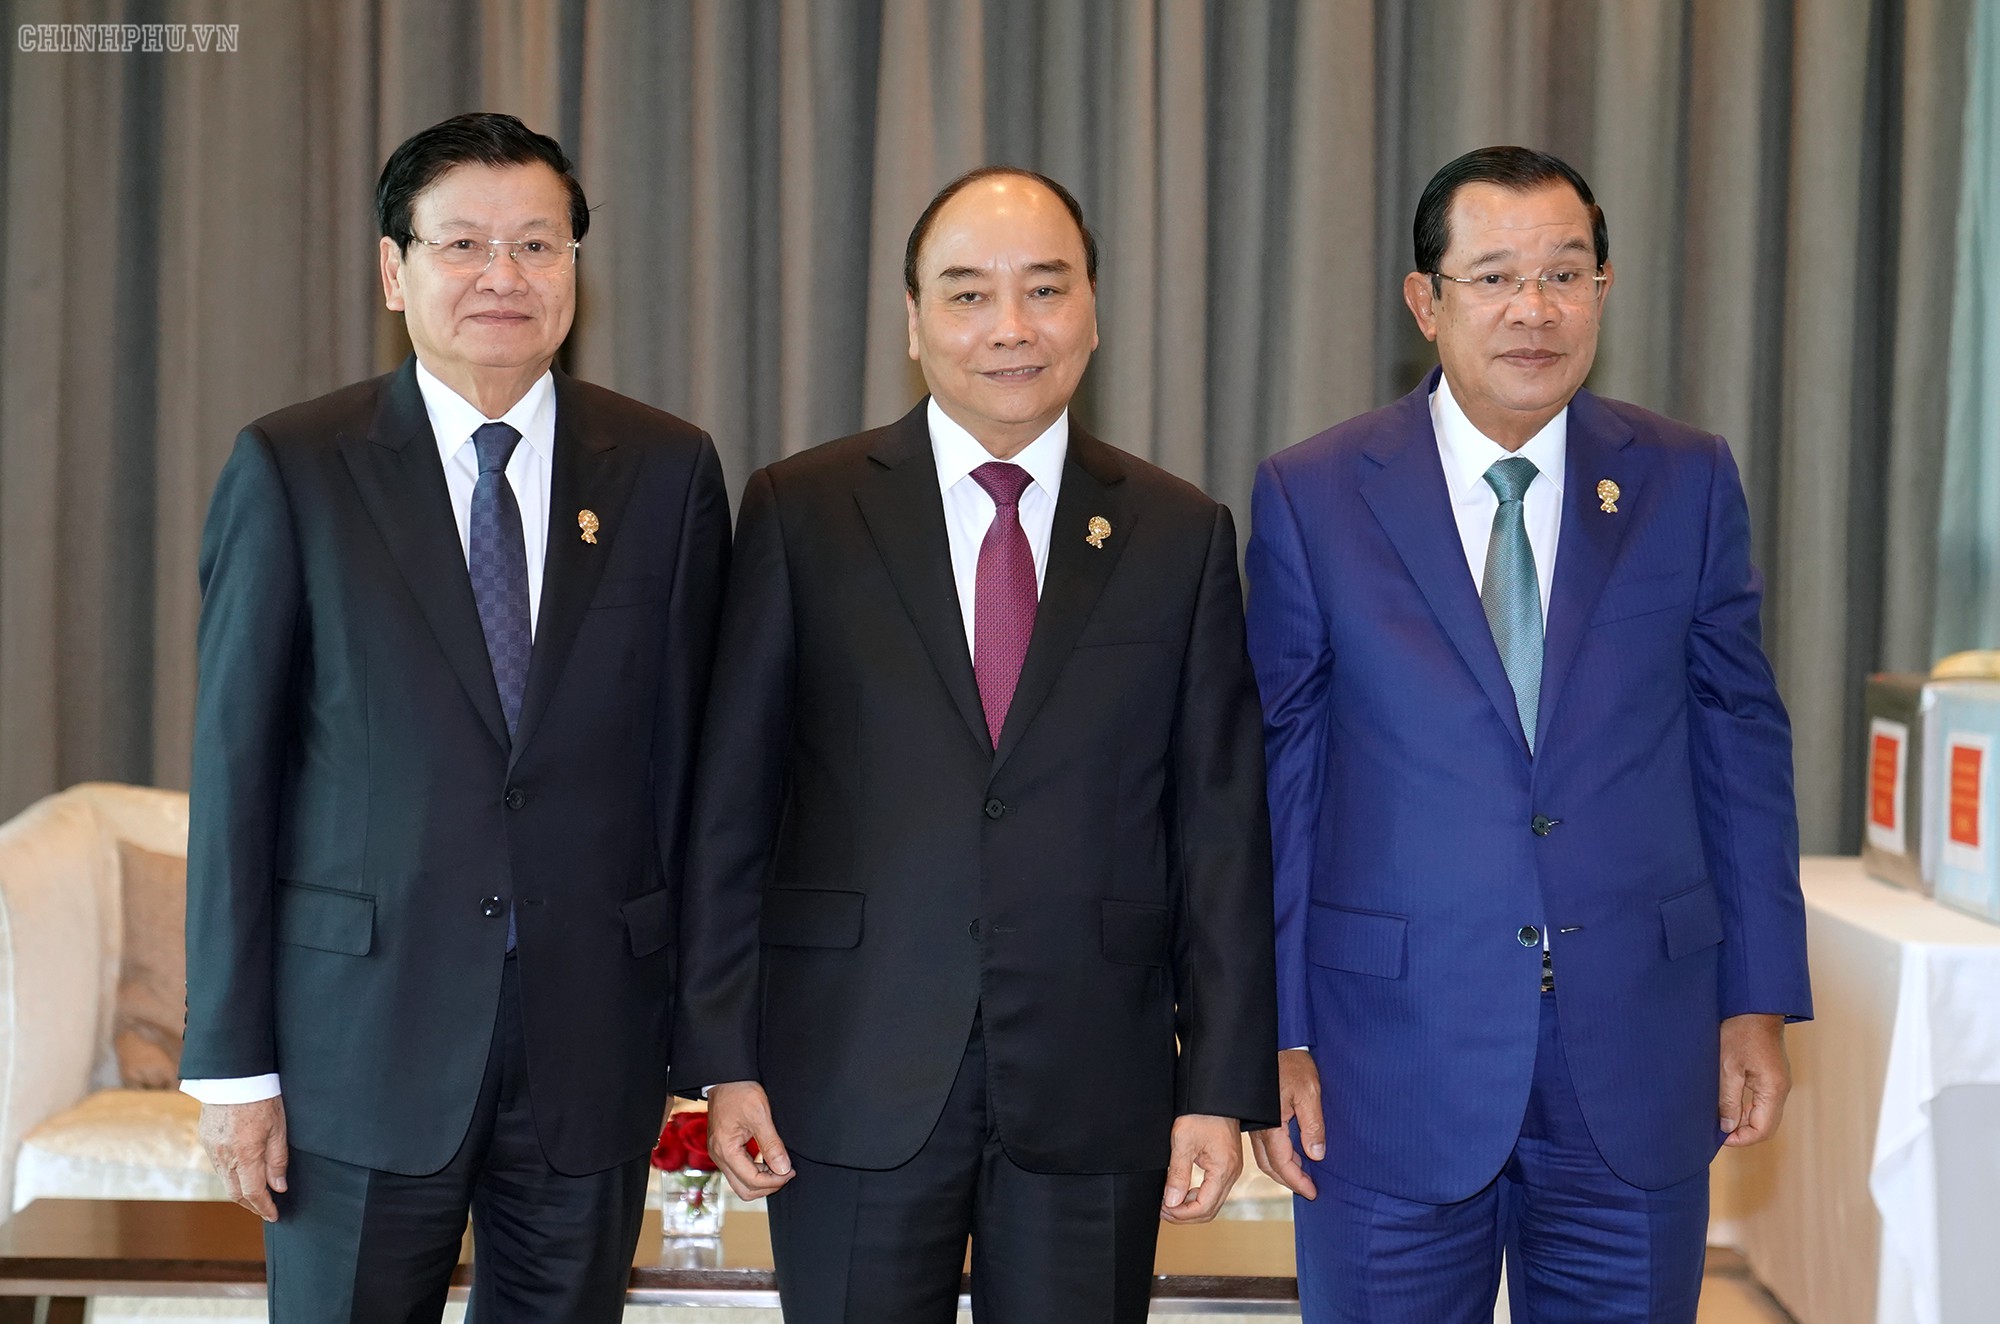 Chùm ảnh: Thủ tướng dự Hội nghị cấp cao ASEAN và gặp lãnh đạo các nước - Ảnh 7.